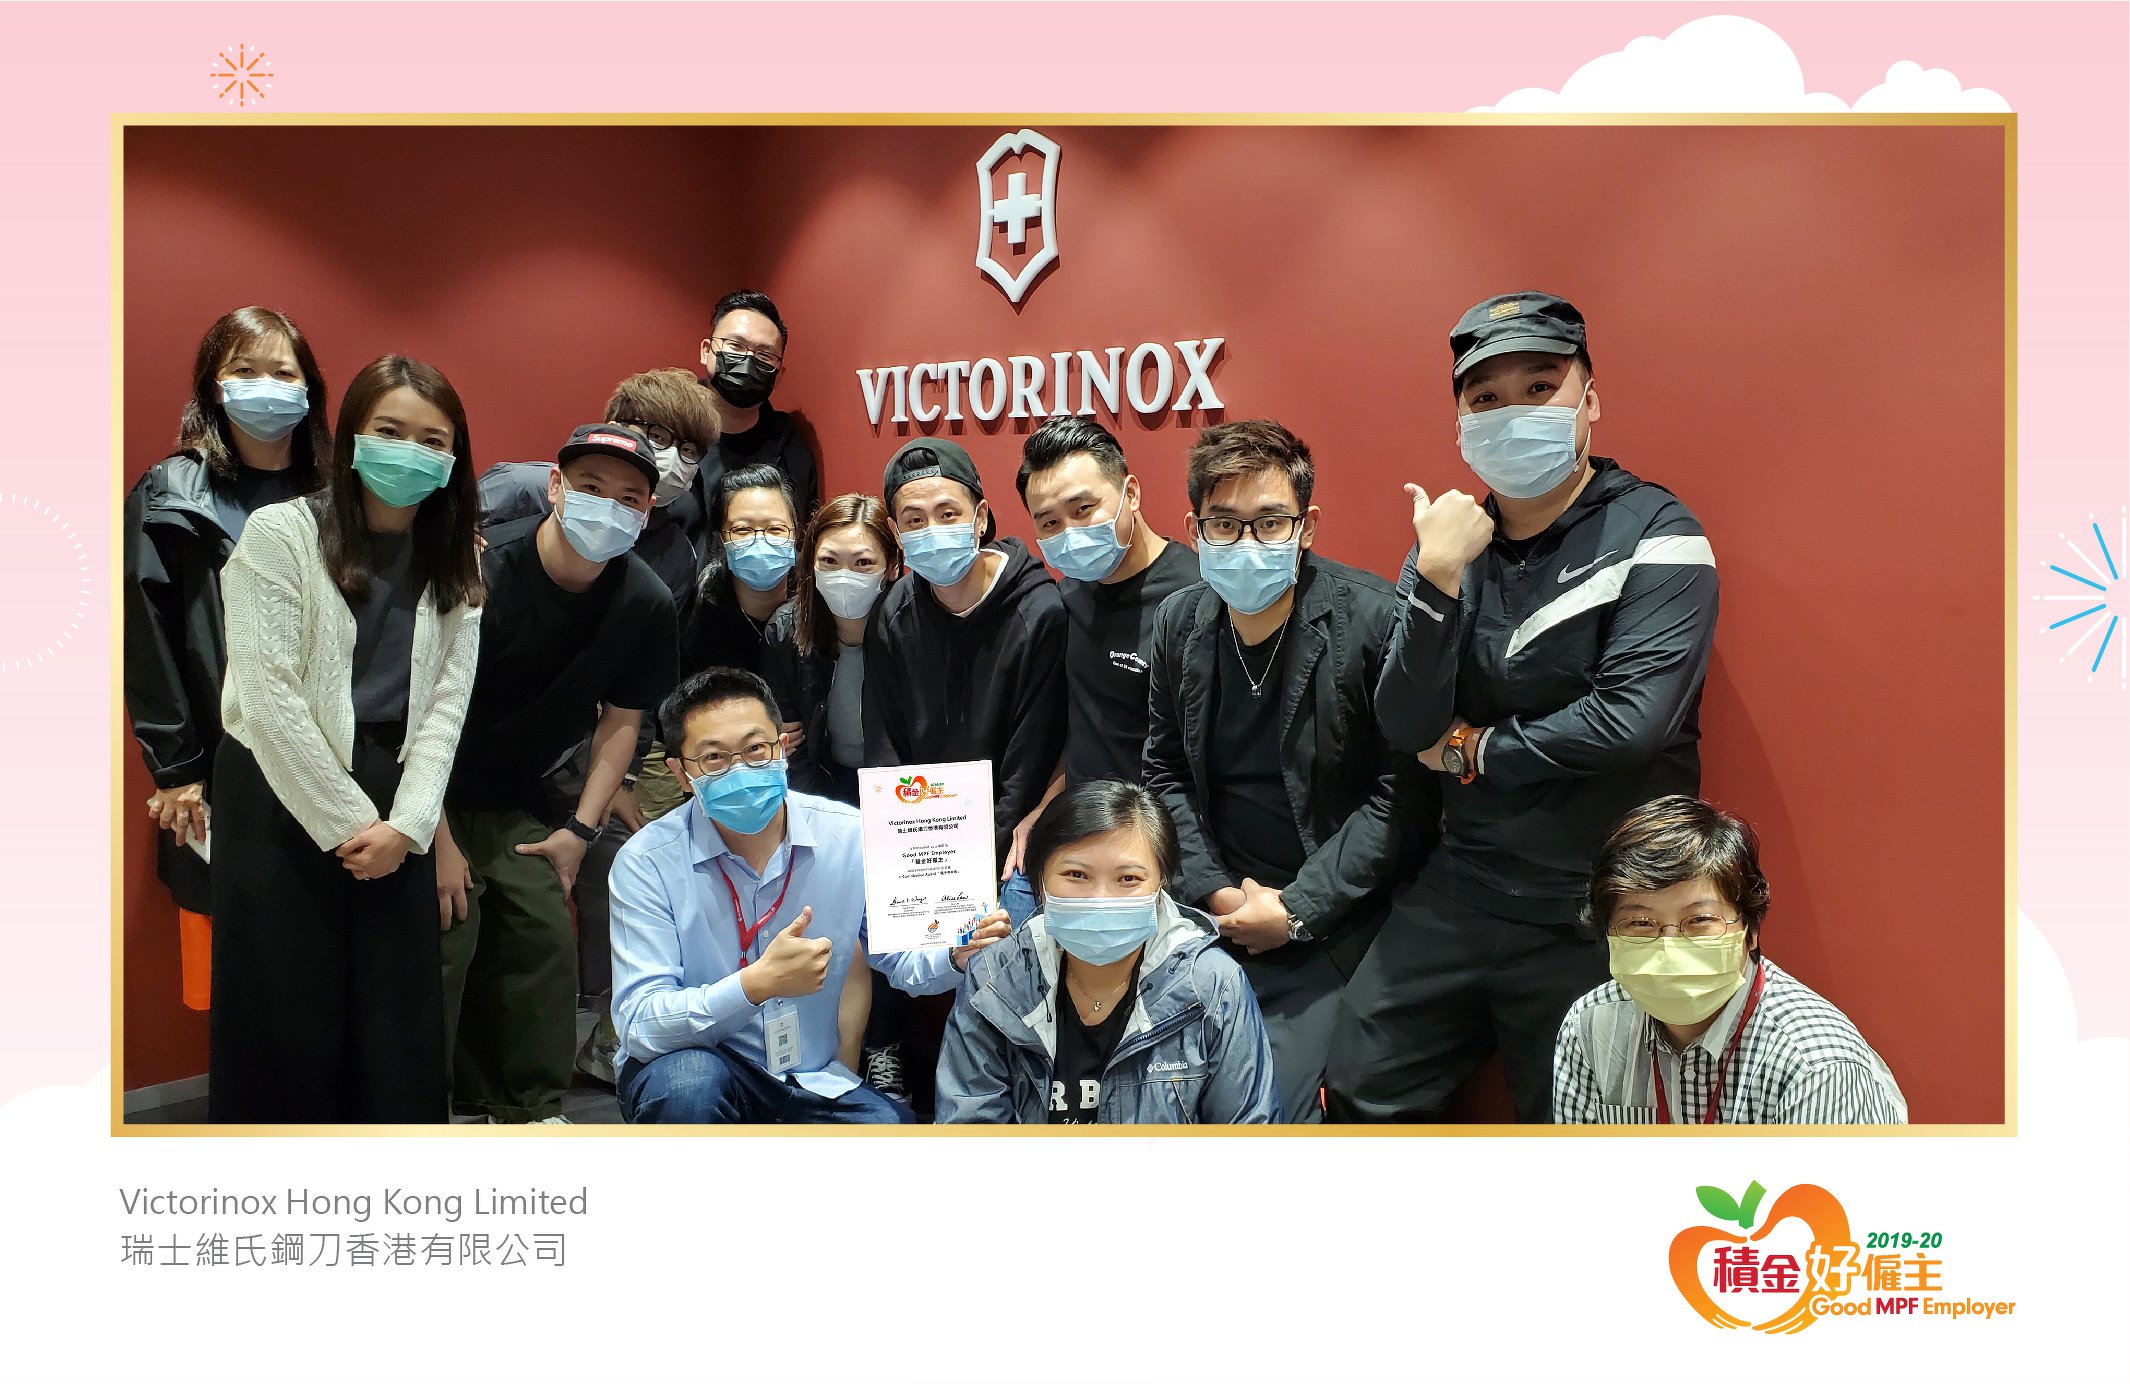 Victorinox Hong Kong Limited 瑞士維氏鋼刀香港有限公司